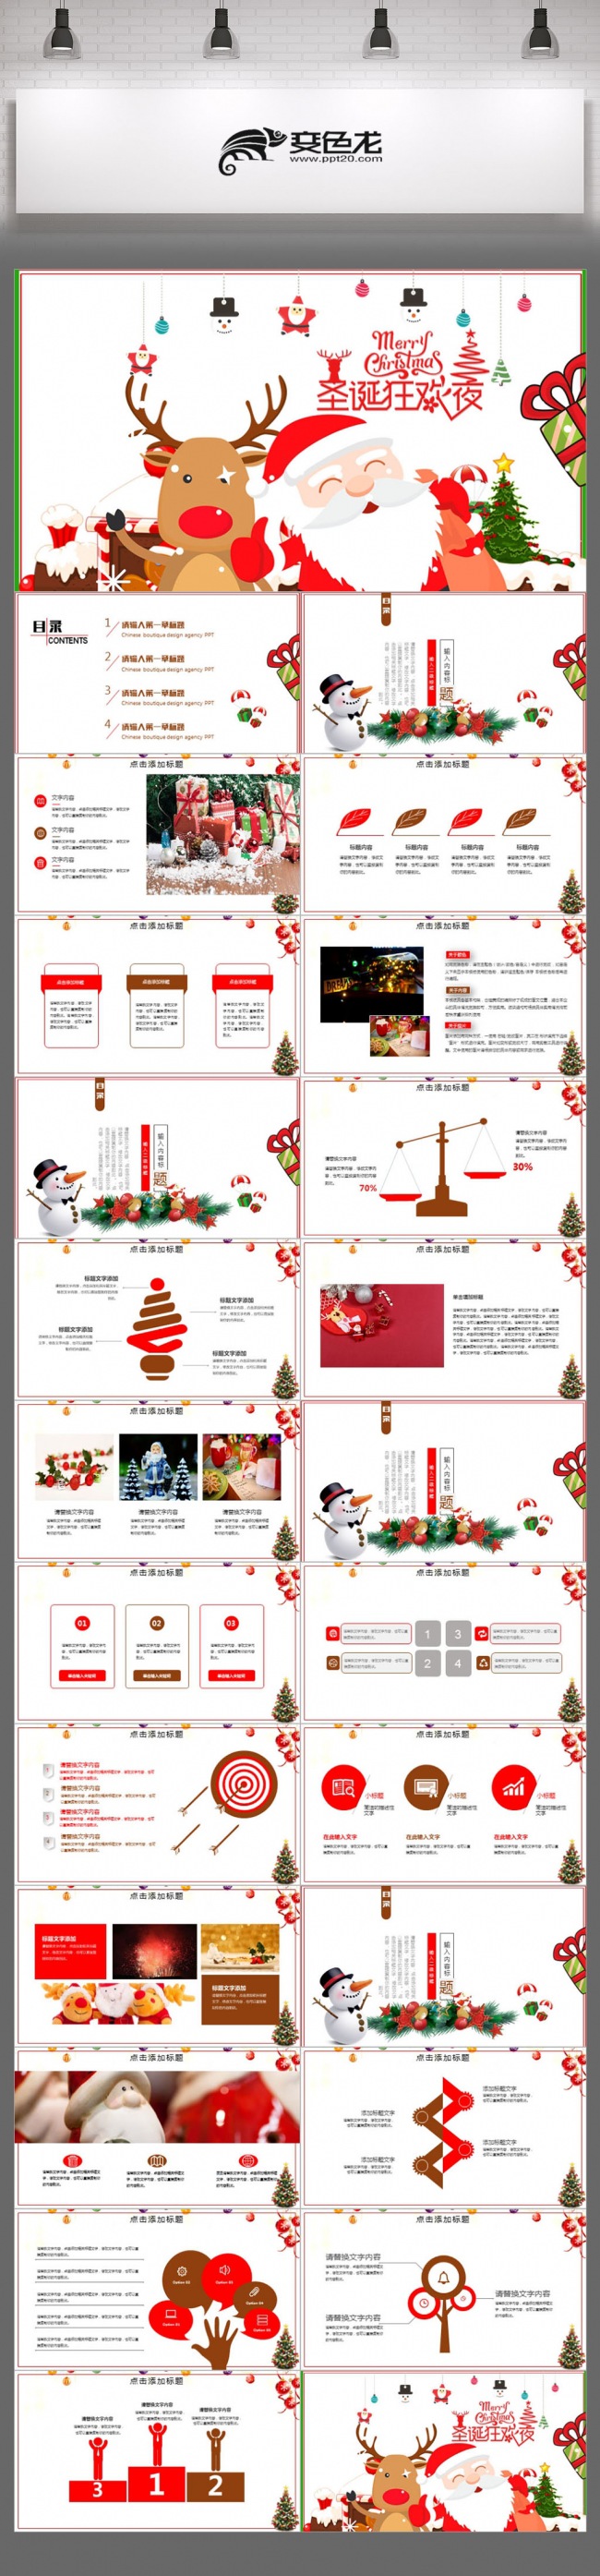 2018红色圣诞节主题公司简介商业计划书动态圣诞ppt模板